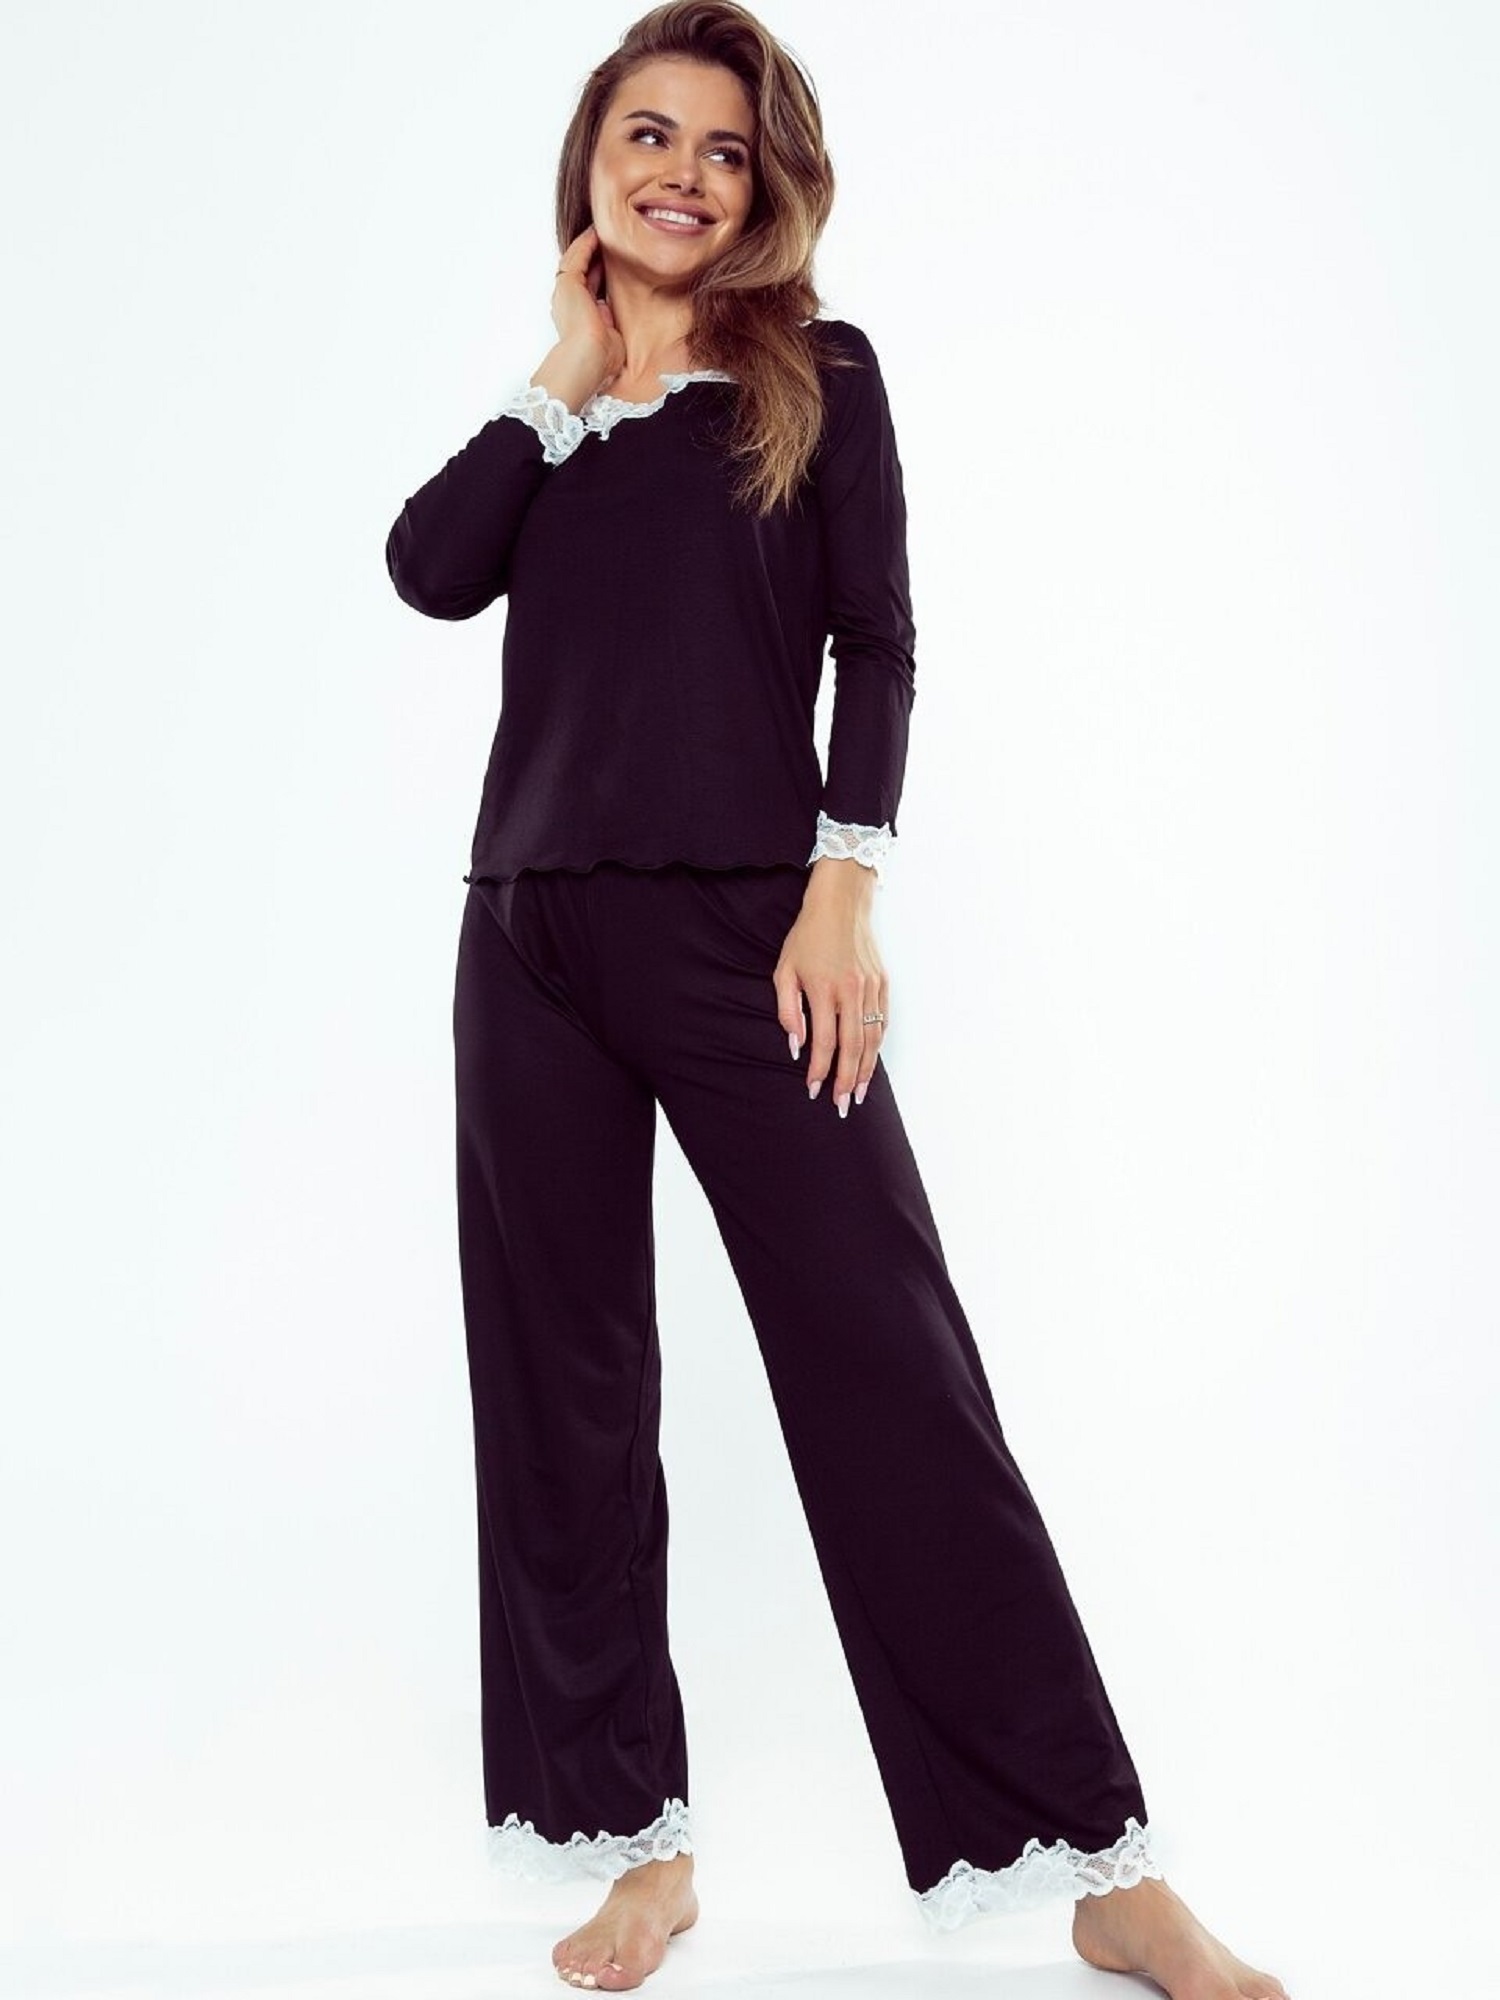 Pyjamas Eldar First Lady Arleta length/r 2XL-3XL black-ecru 099